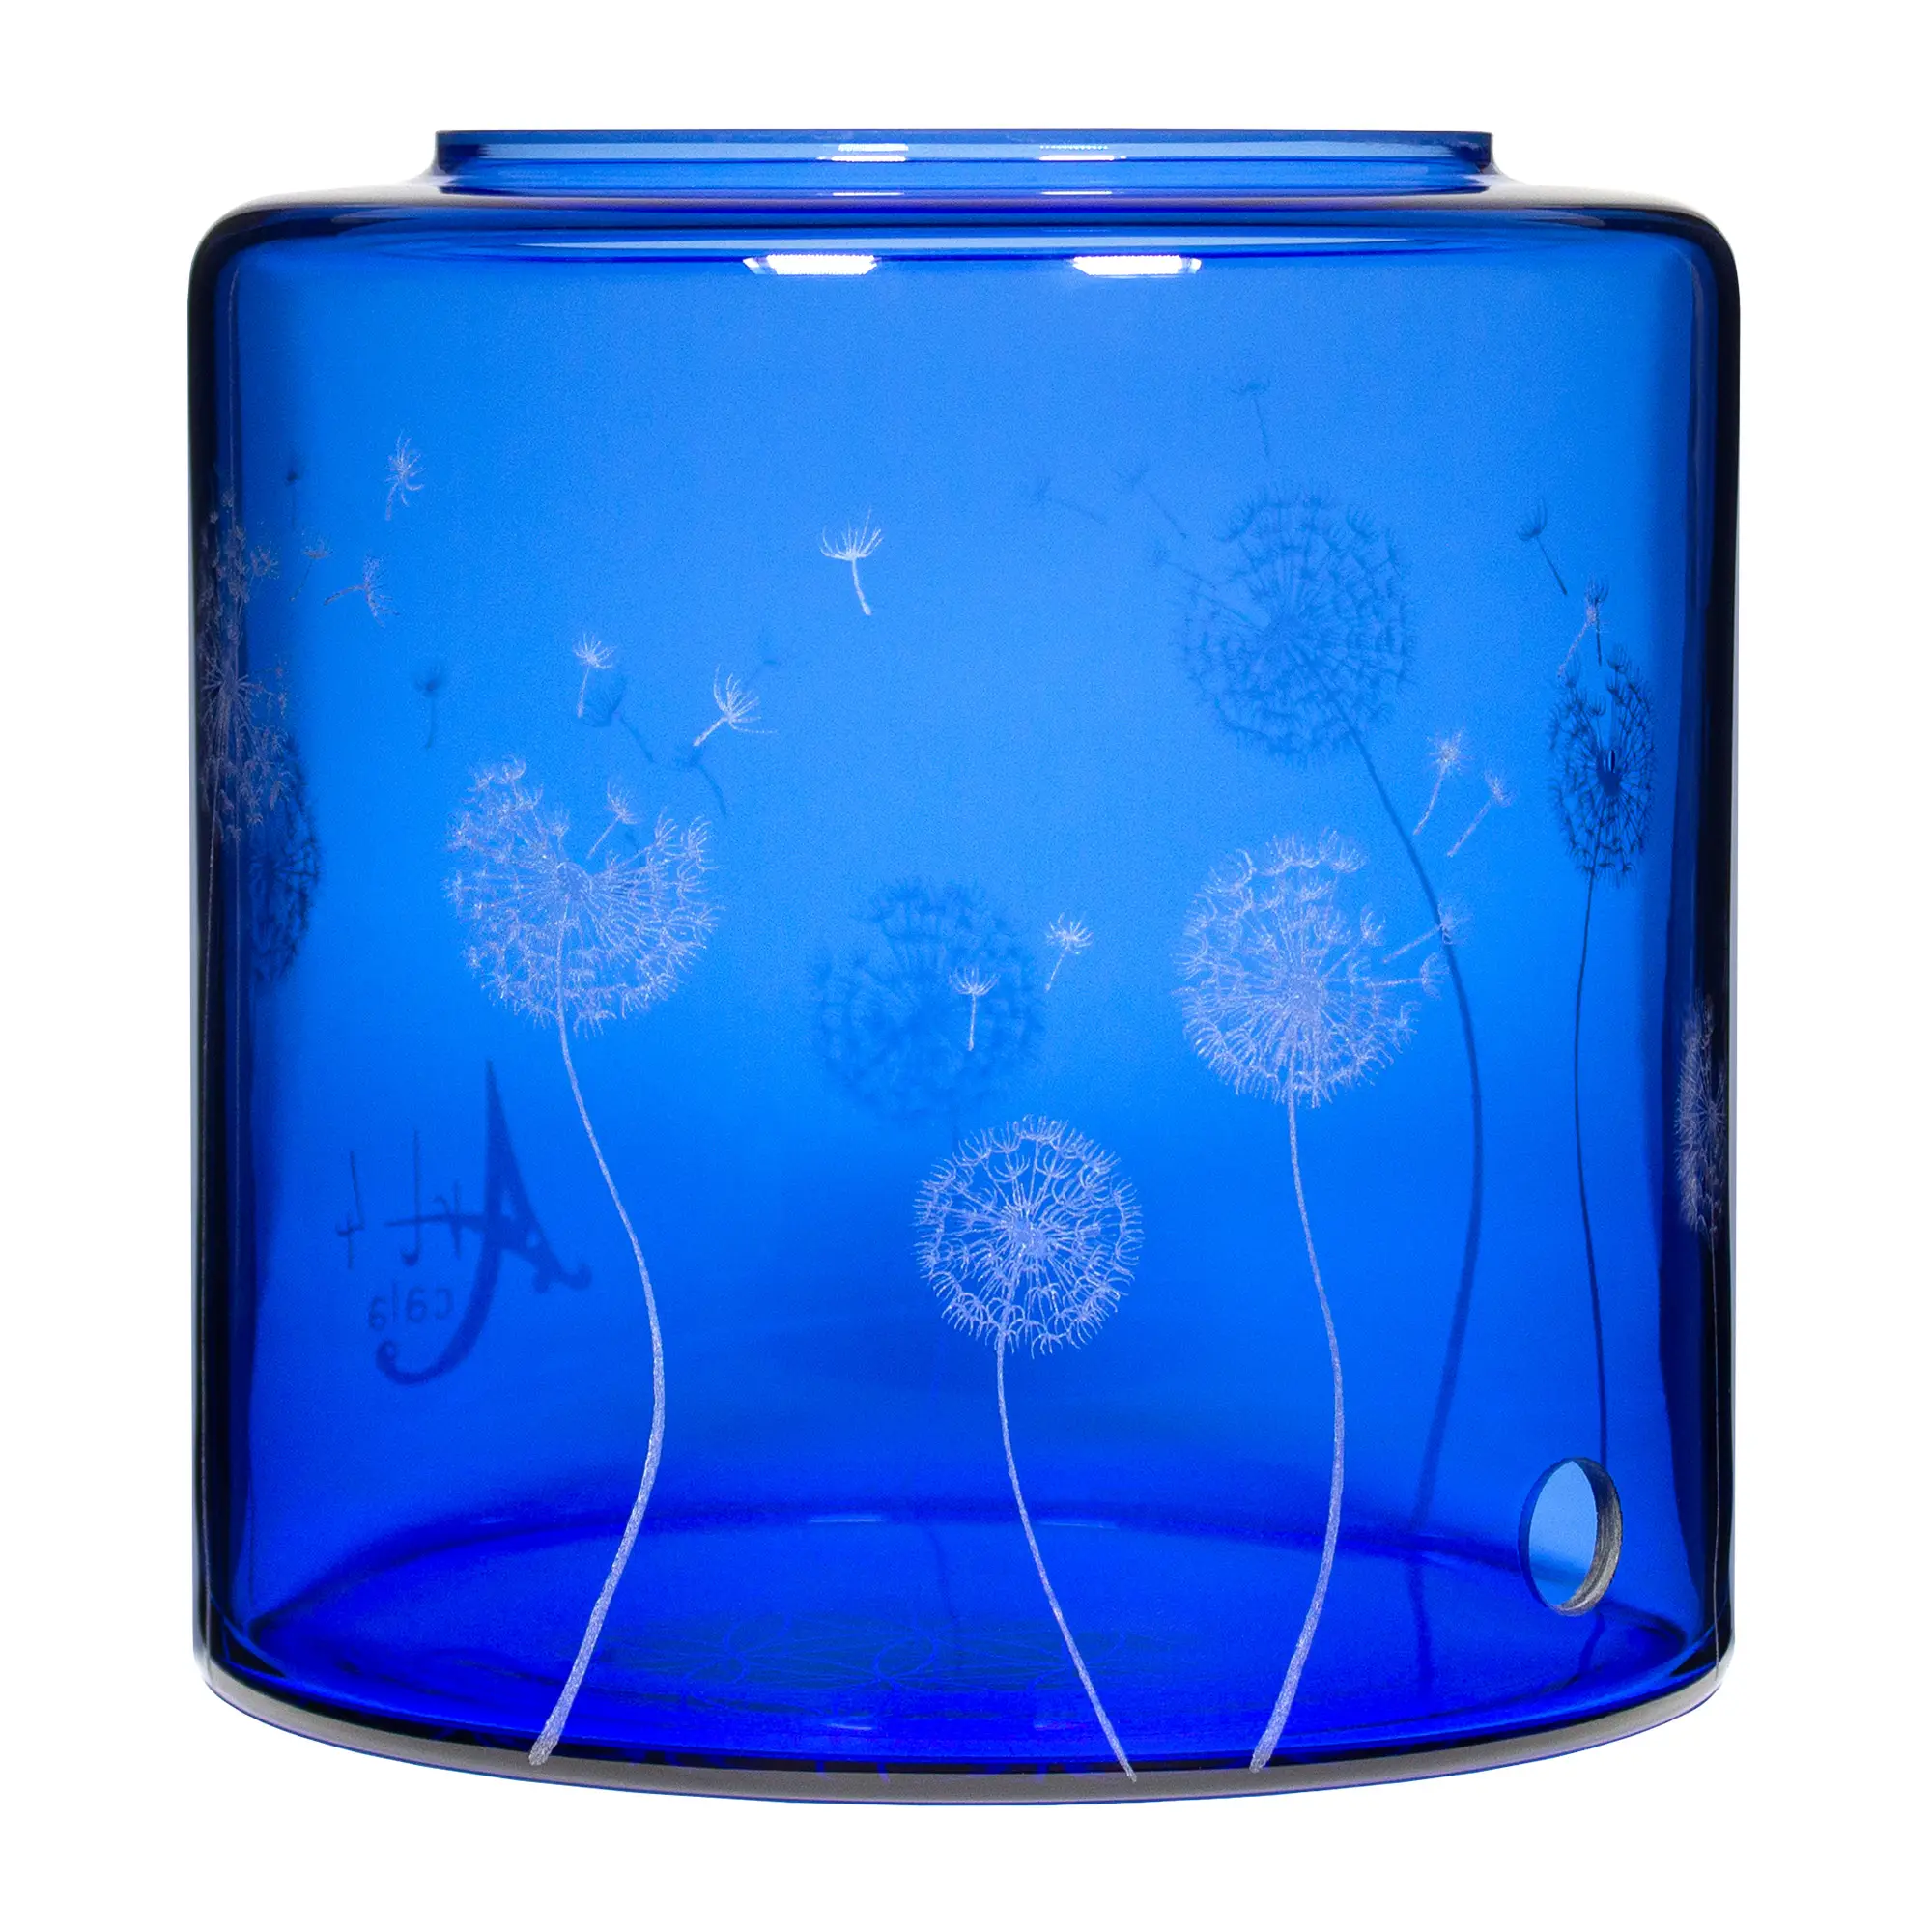 Ein Acala Wasserfilter Mini mit einer Handgravur. Die Gravur zeigt, auf blauem Glas, ganz viele Pusteblumen und einige samen die aus der Pusteblume herausfliegen.Ansicht von vorne links.